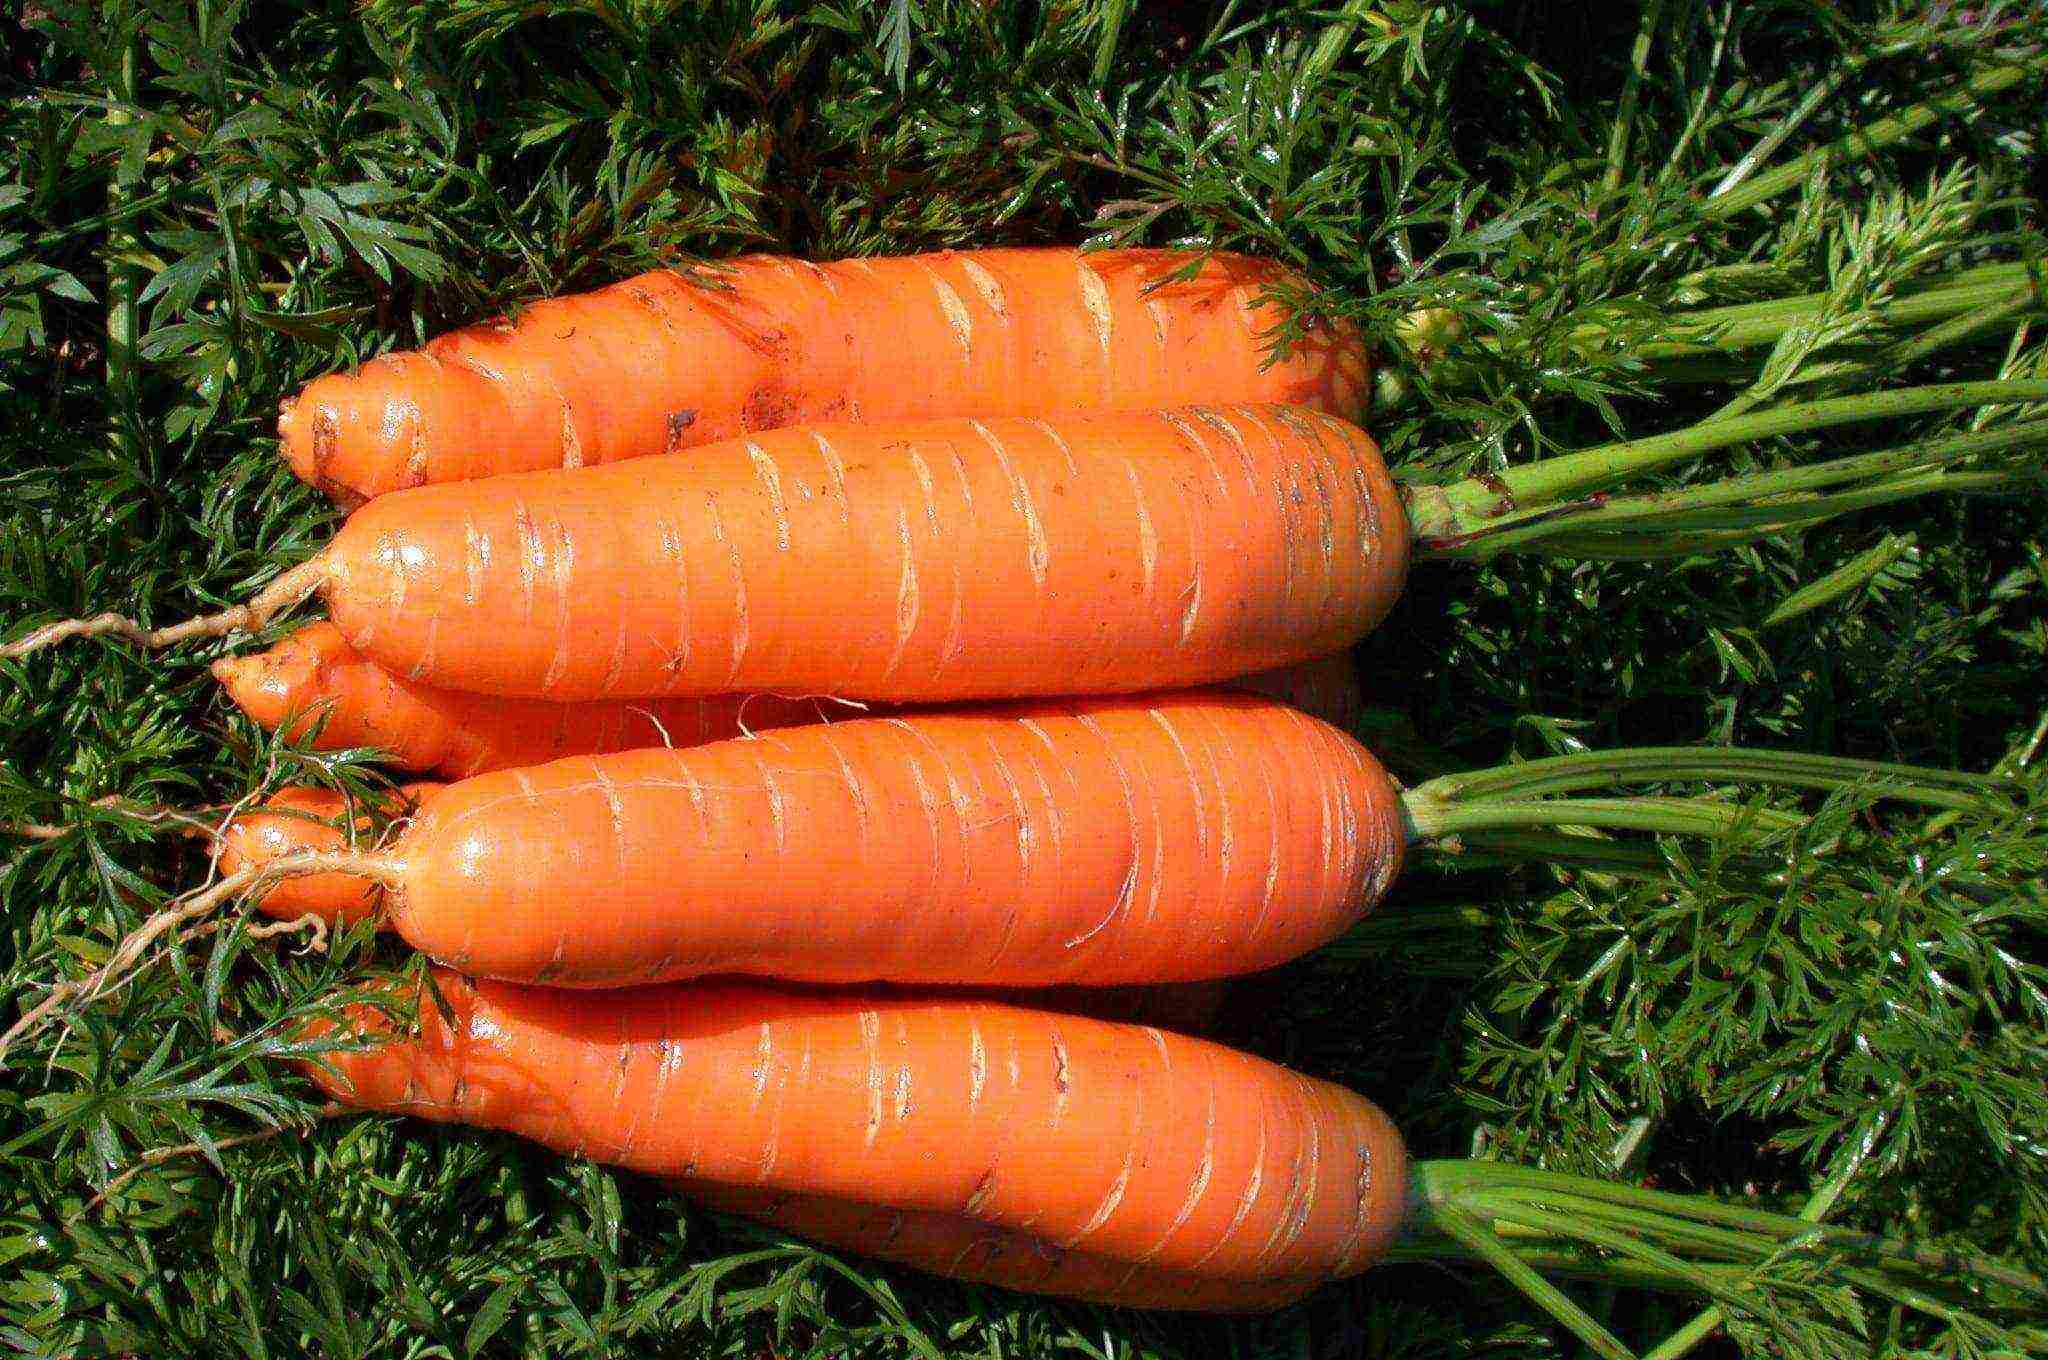 морковь хороший сорт